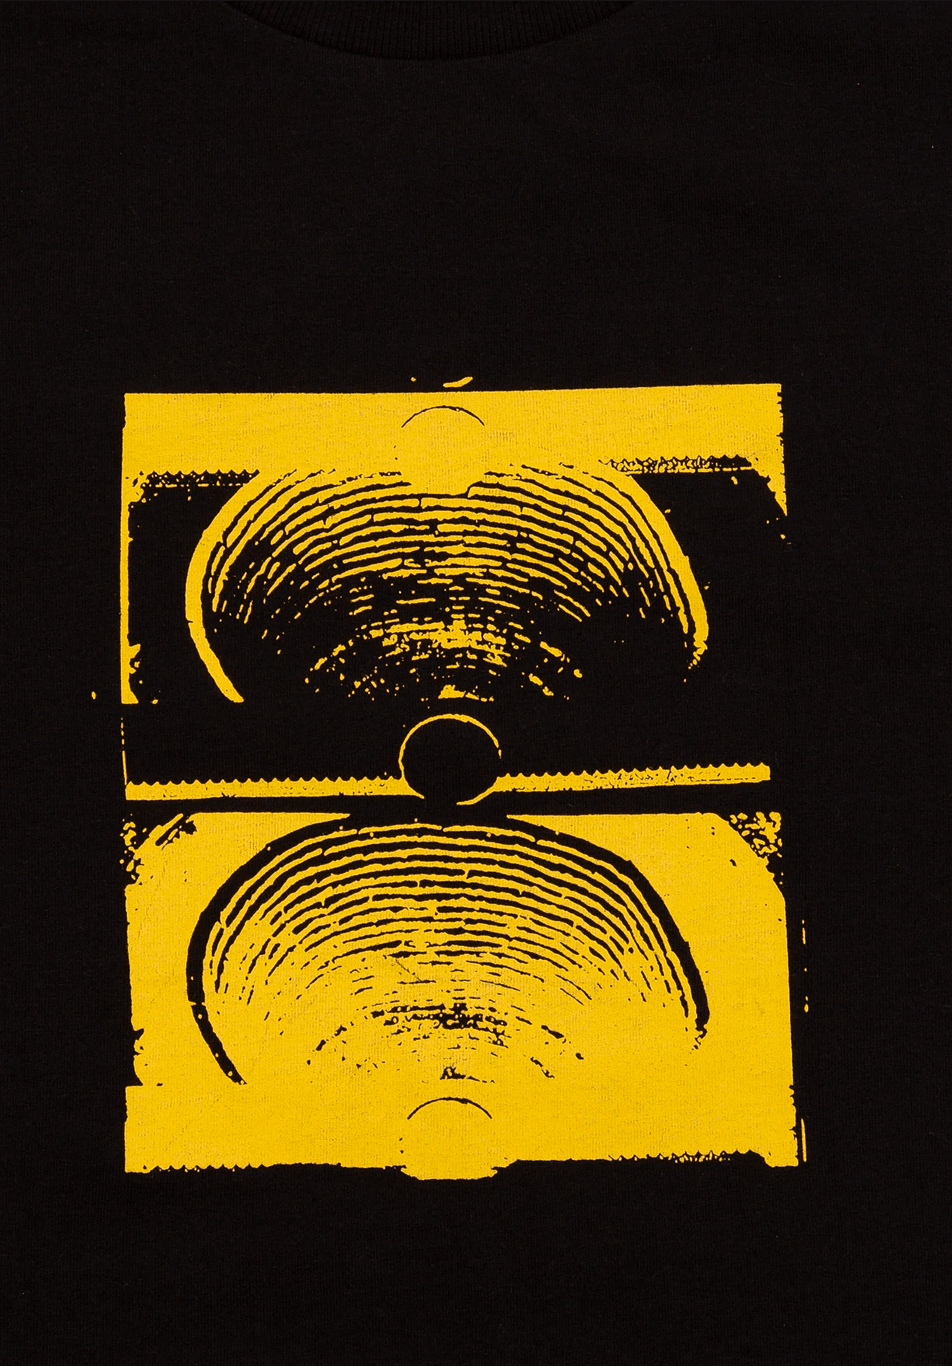 Former Merchandise Crux LS T-Shirt Schwarz Gelb